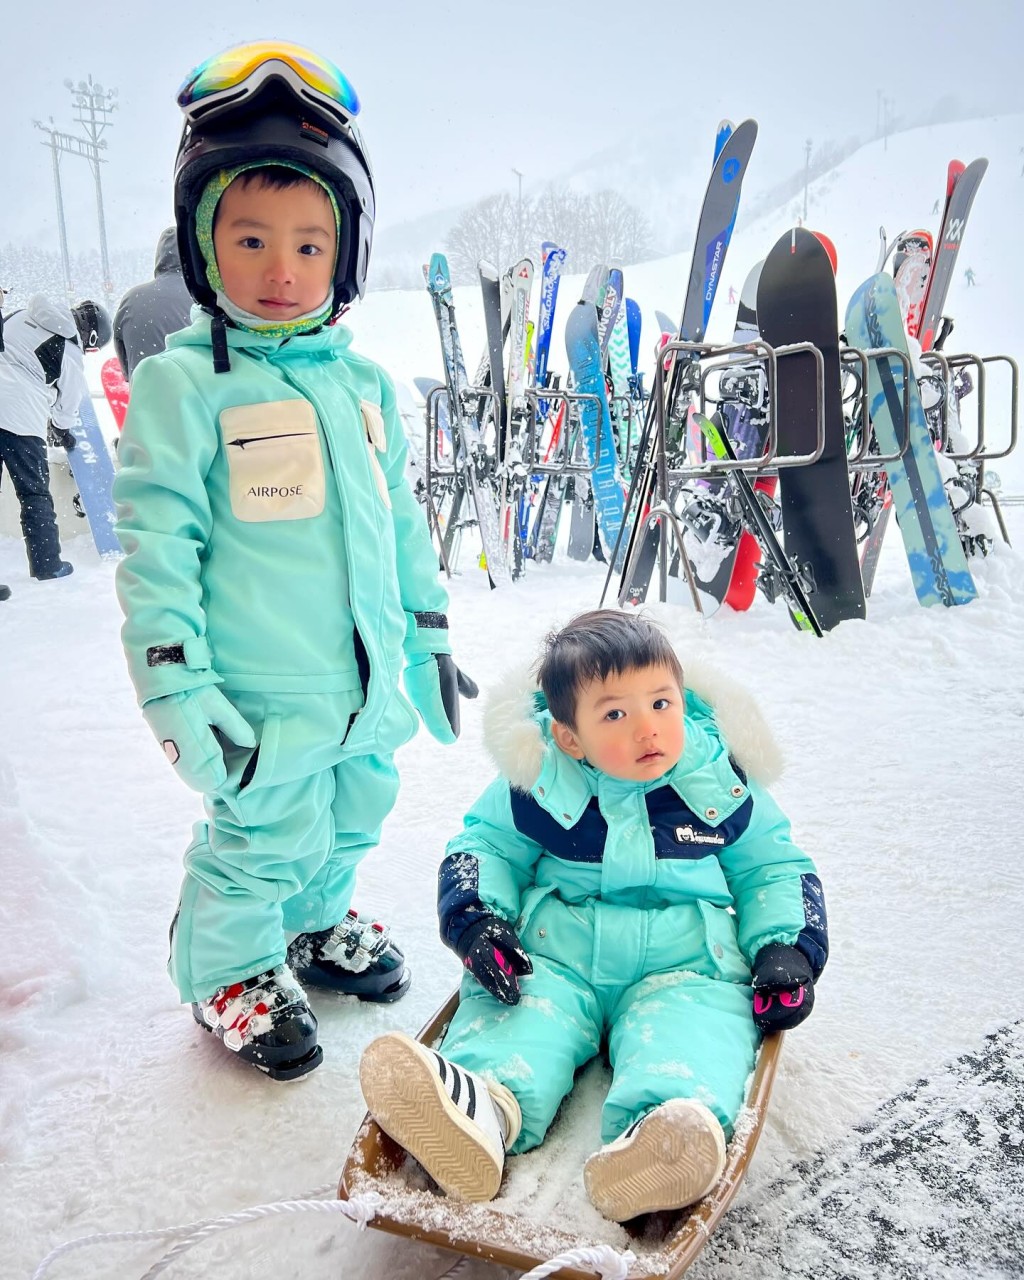 倪晨曦的两子见到雪地反应不一。